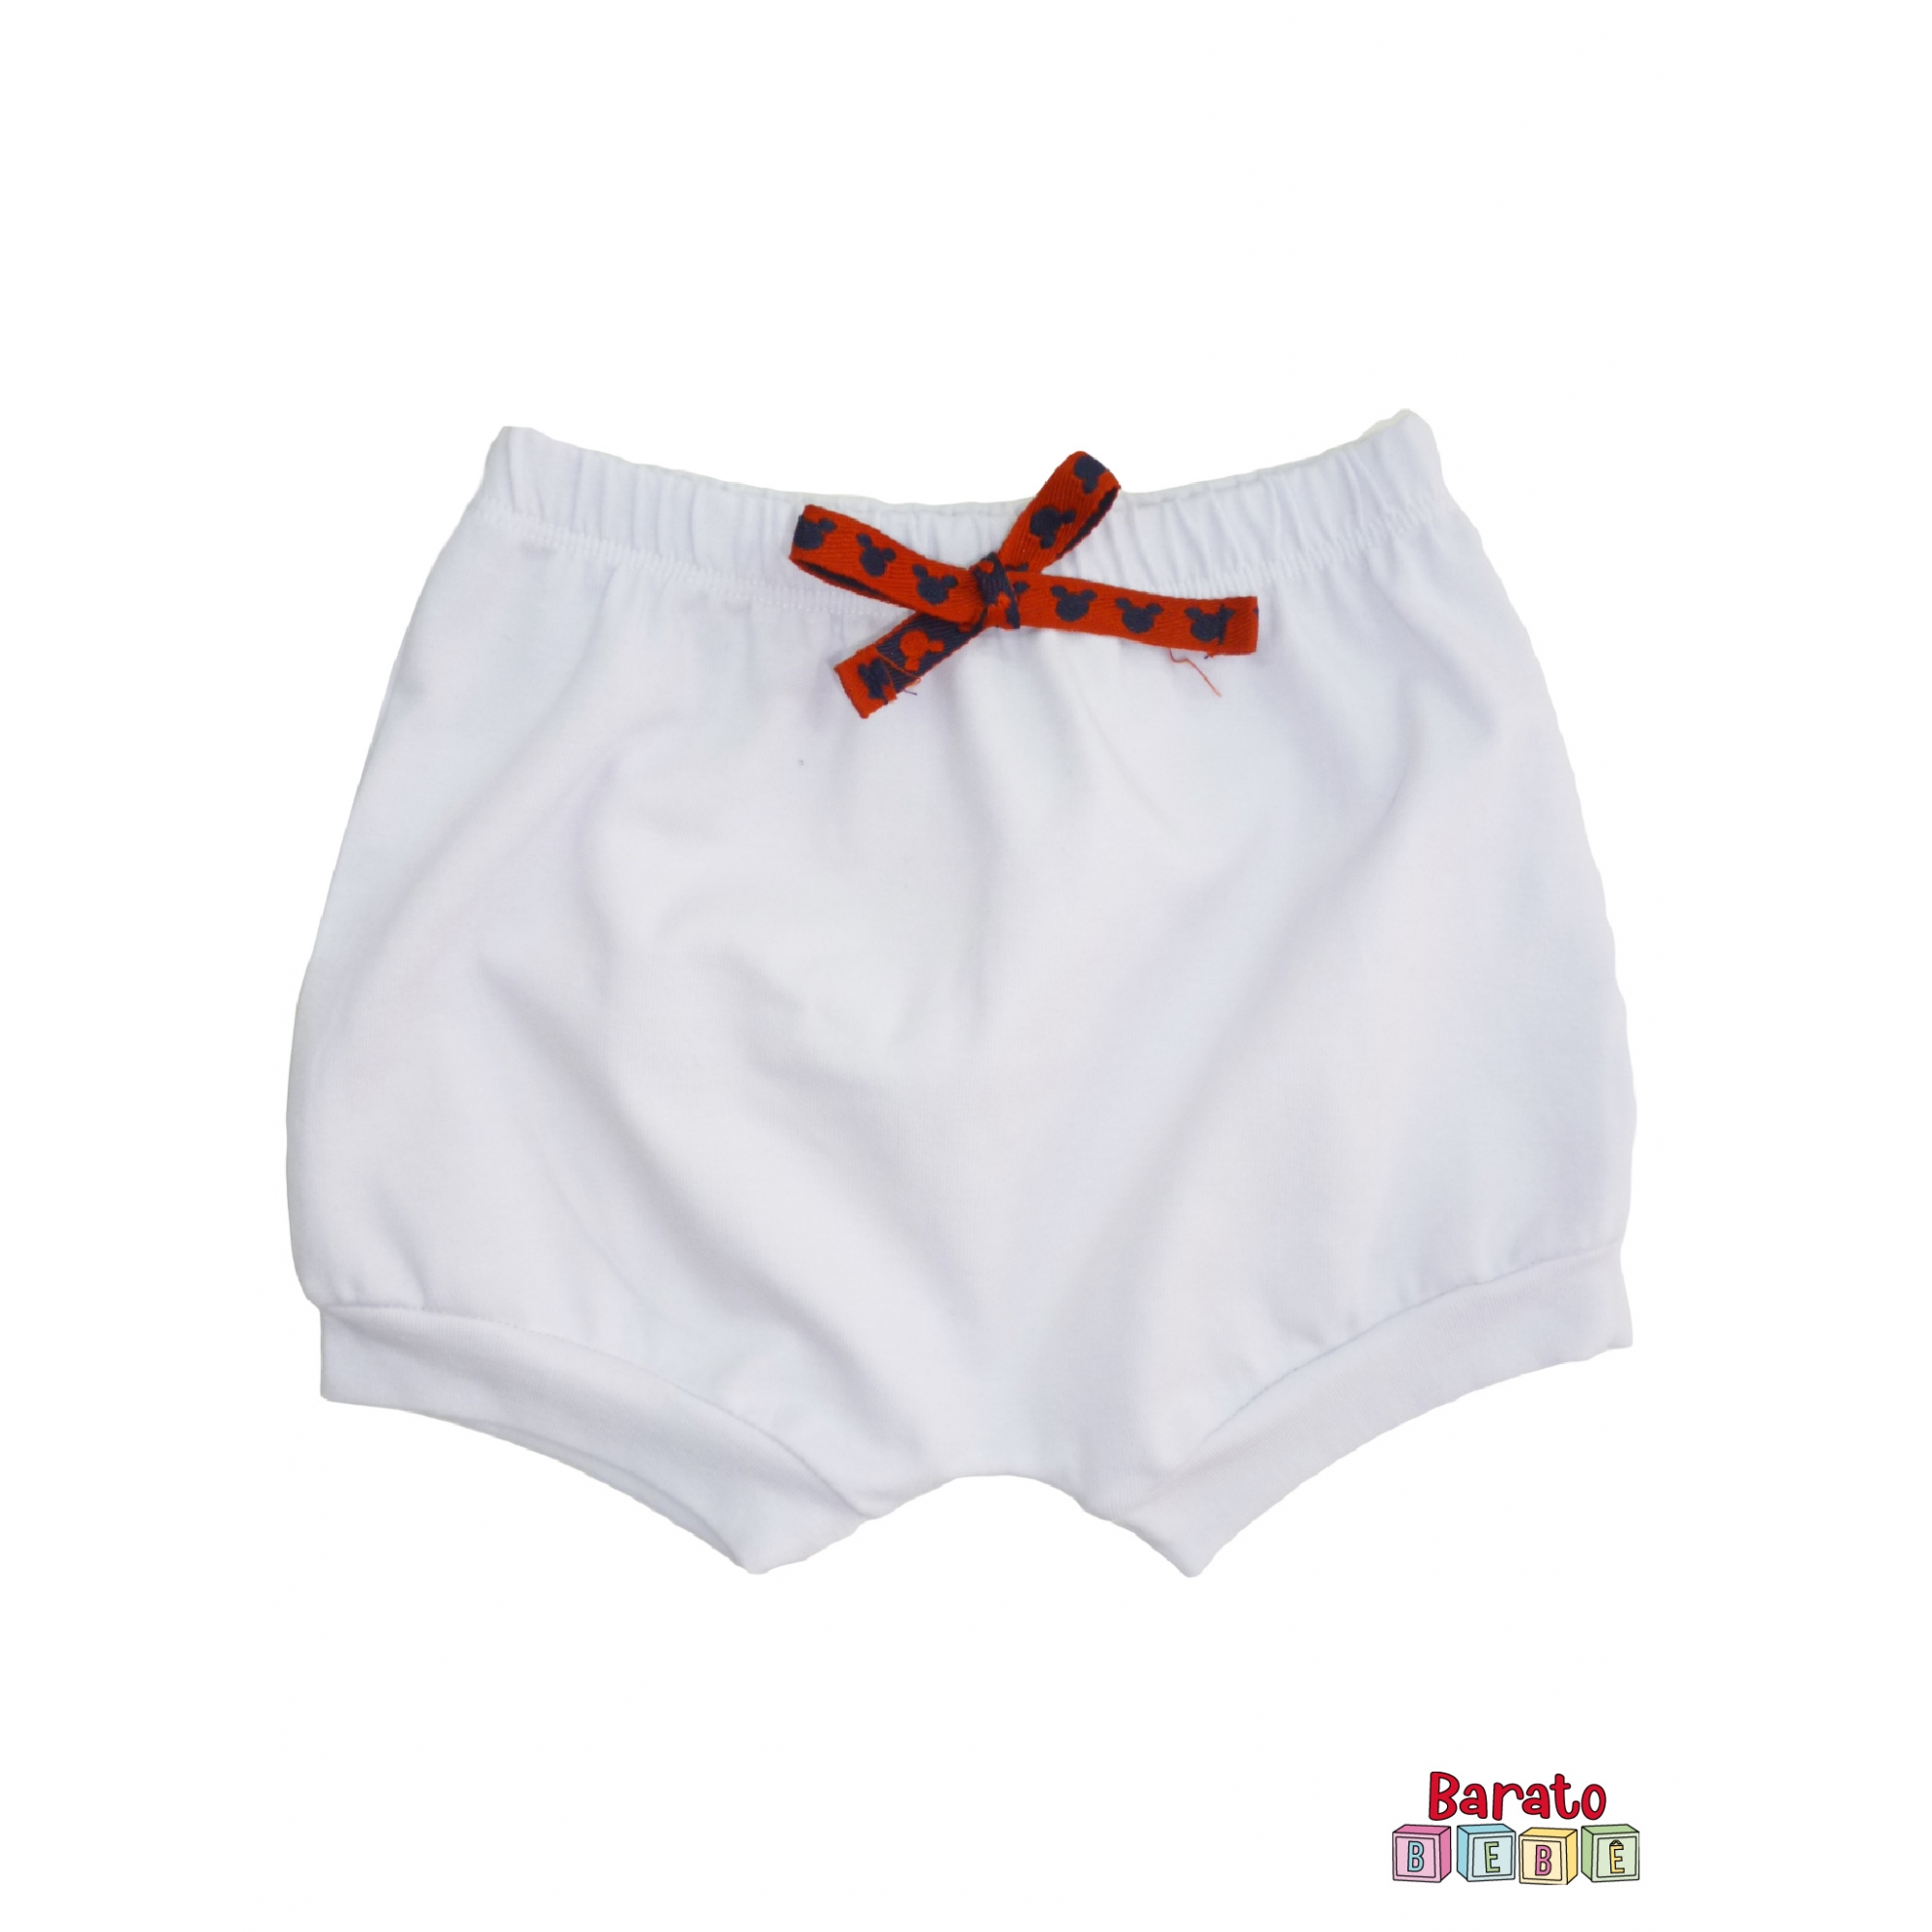 Shorts(Tapa Fralda) Bebê(P/M/G)  - Barato Bebê - Branco c/ Laço Tematico